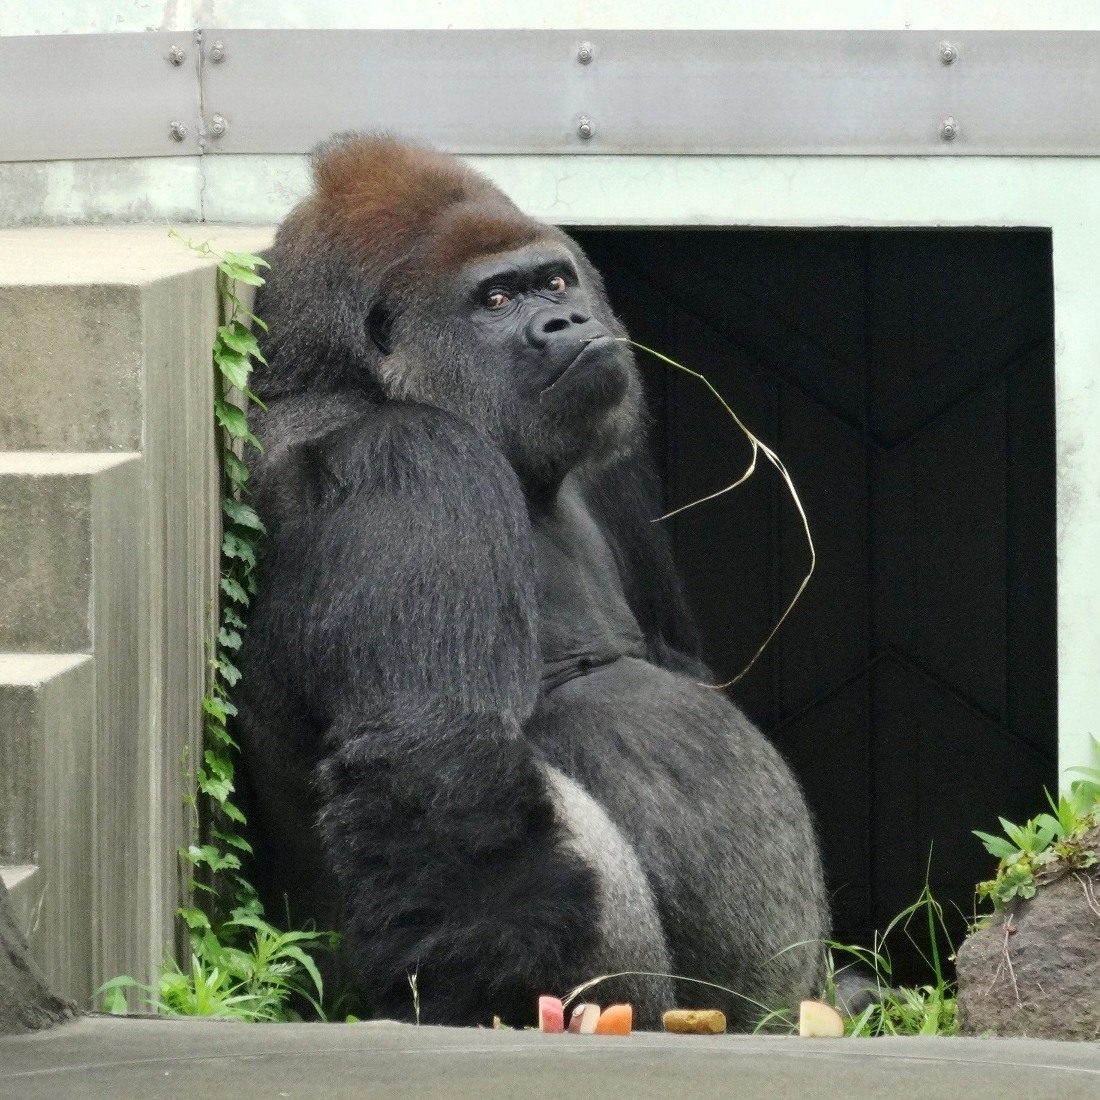 福岡市動物園 ゴリラ ヤマト の死亡について